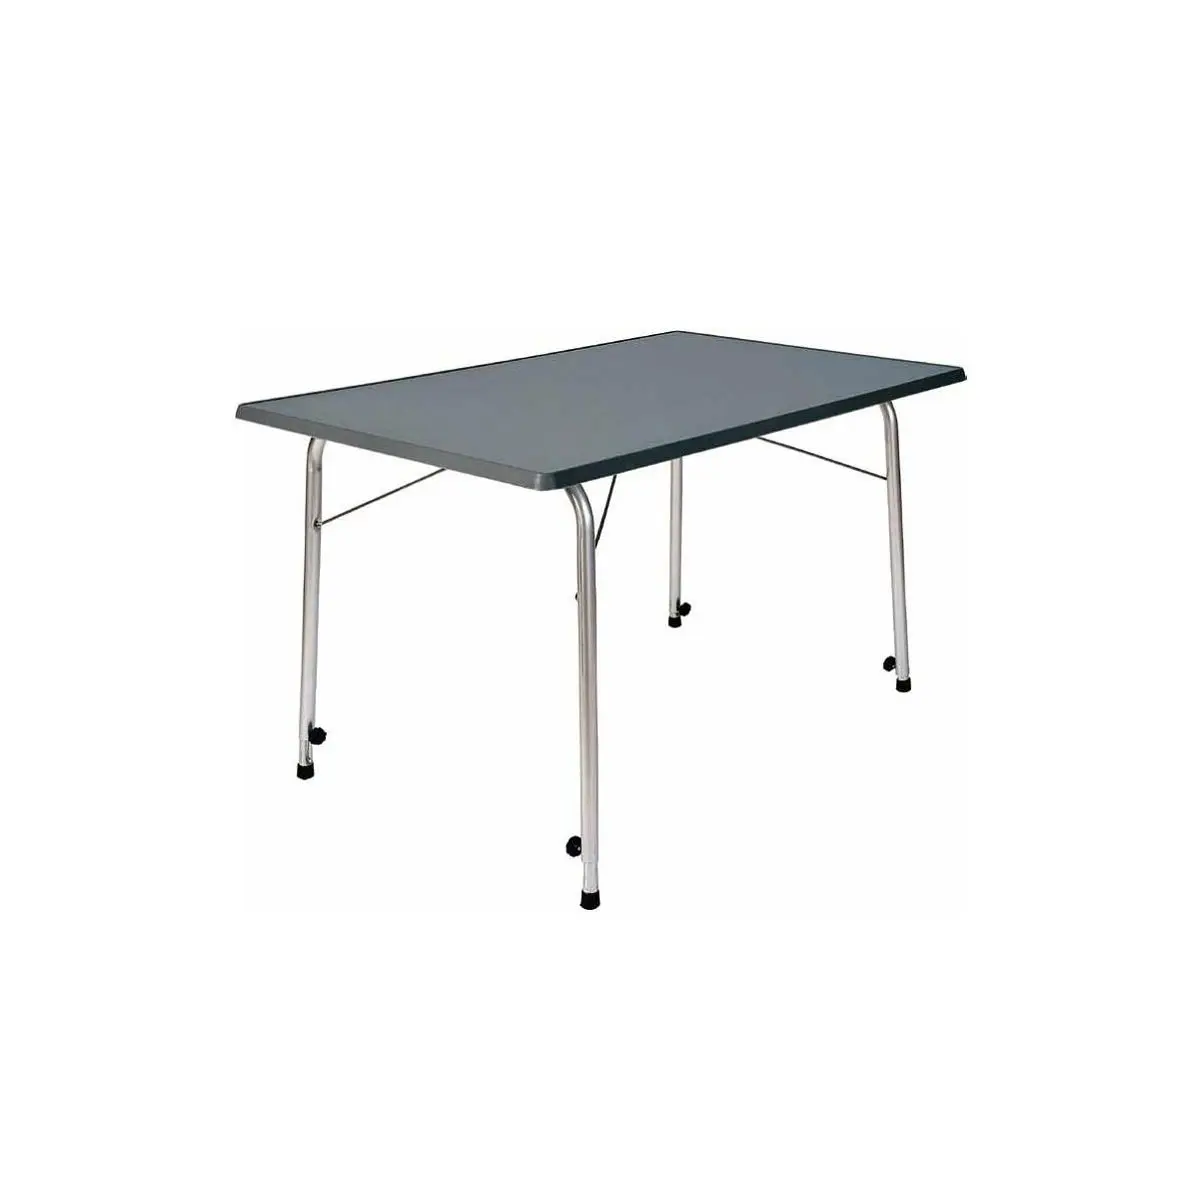 Kempingový stolík Stabilic - antracit, 80 x 60 cm